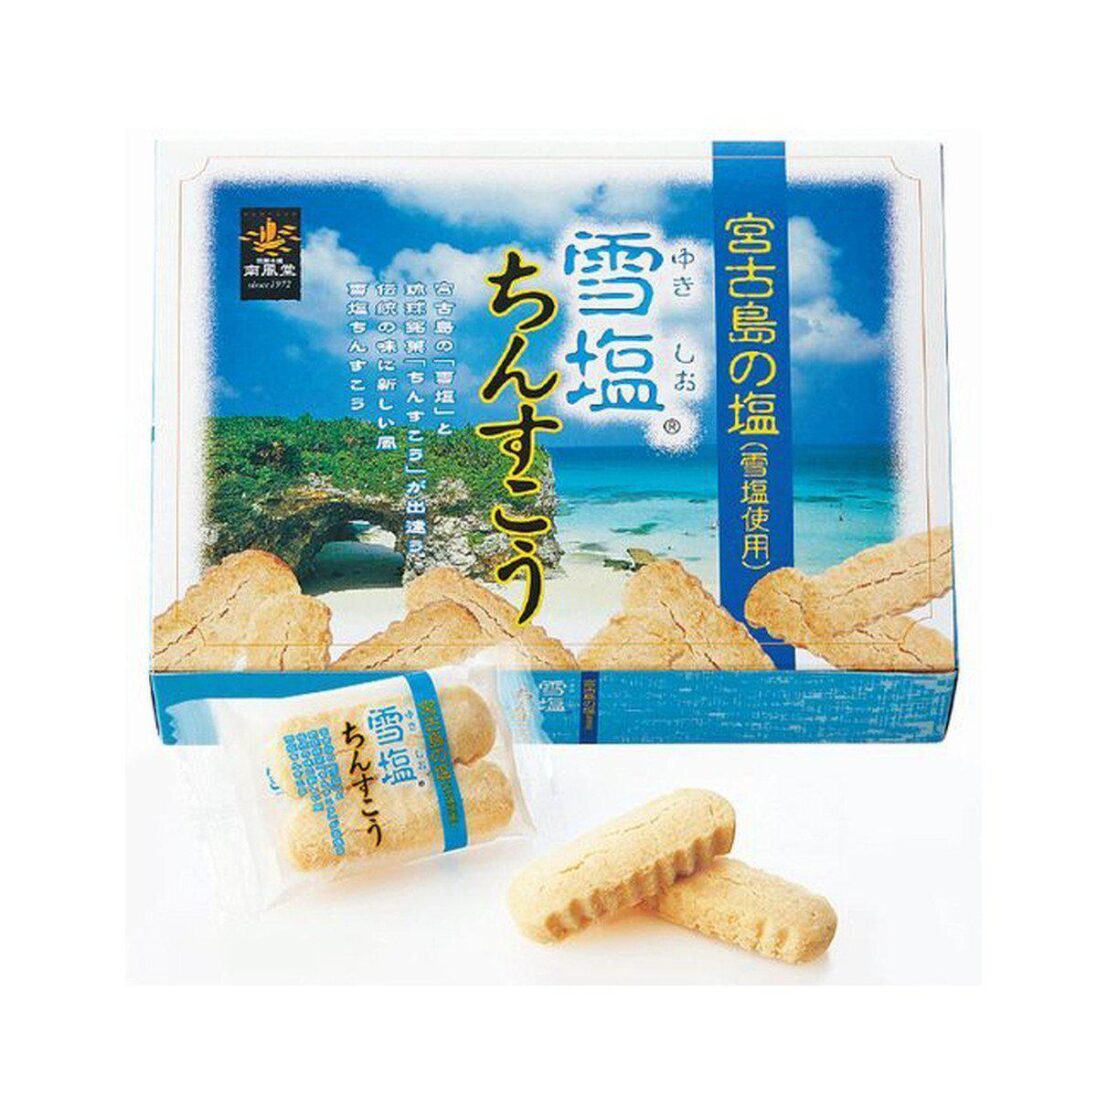 Nanpudo Yukishio Chinsuko Okinawan Shortbread Cookies 48 Pieces